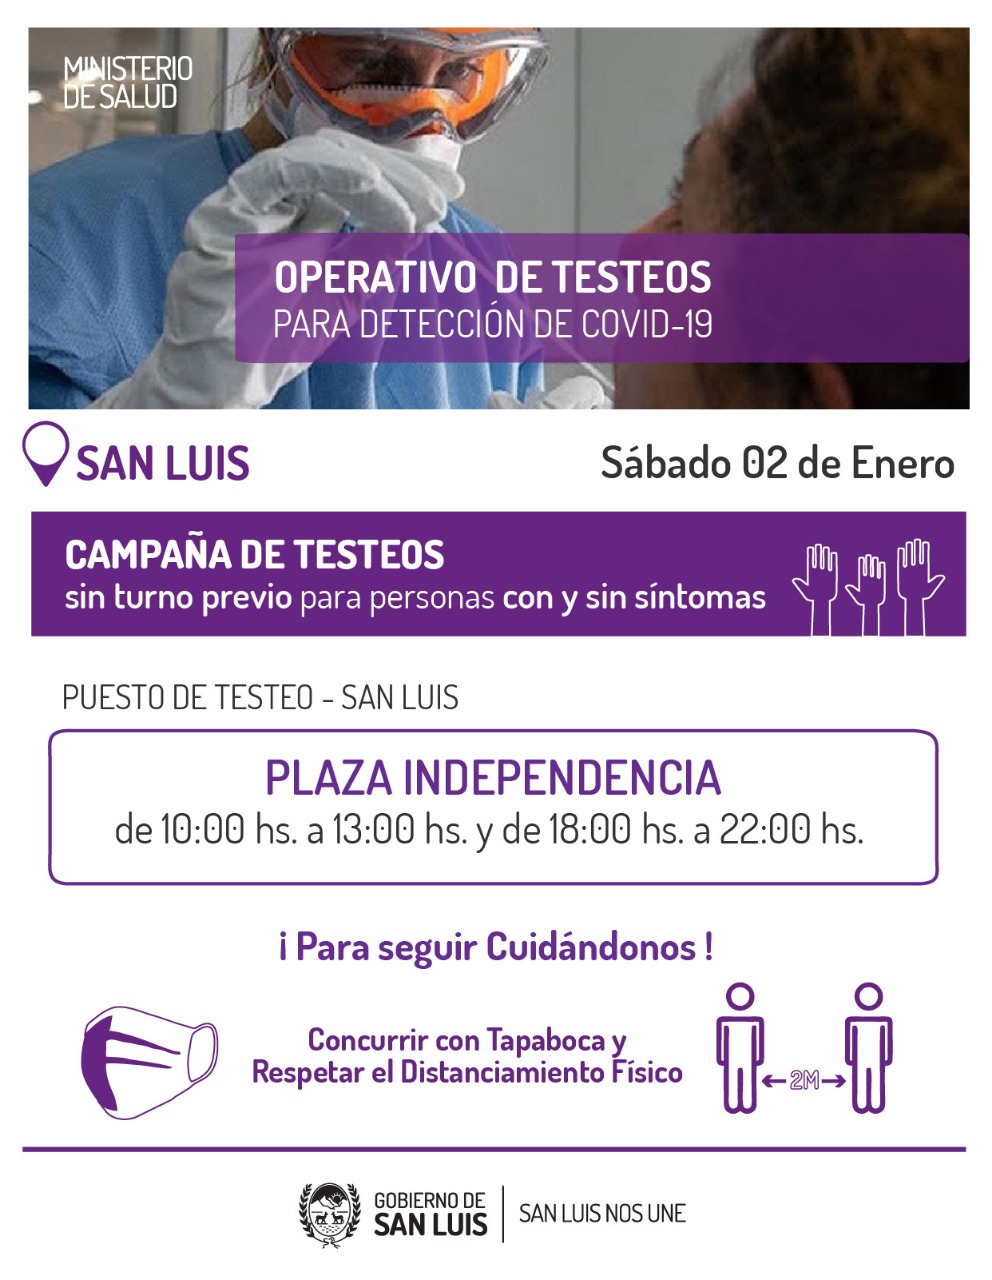 El sábado realizarán testeos para detección de COVID-19 en la Plaza Independencia de San Luis